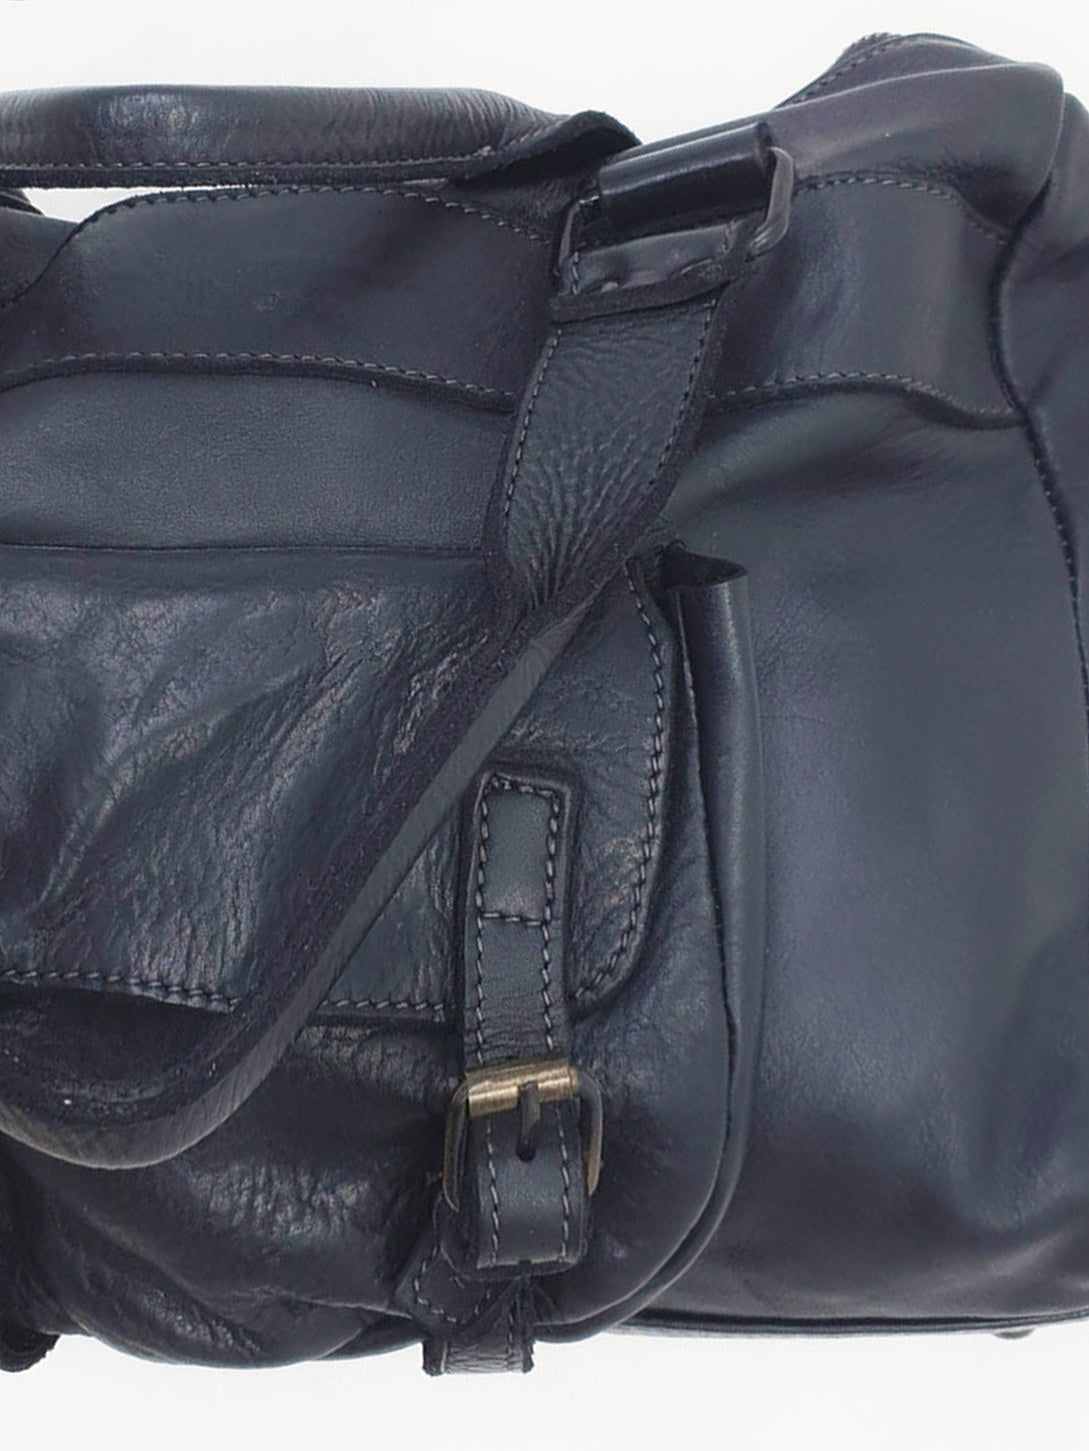 ANYA | Washed Leather Shoulder Bag | Black